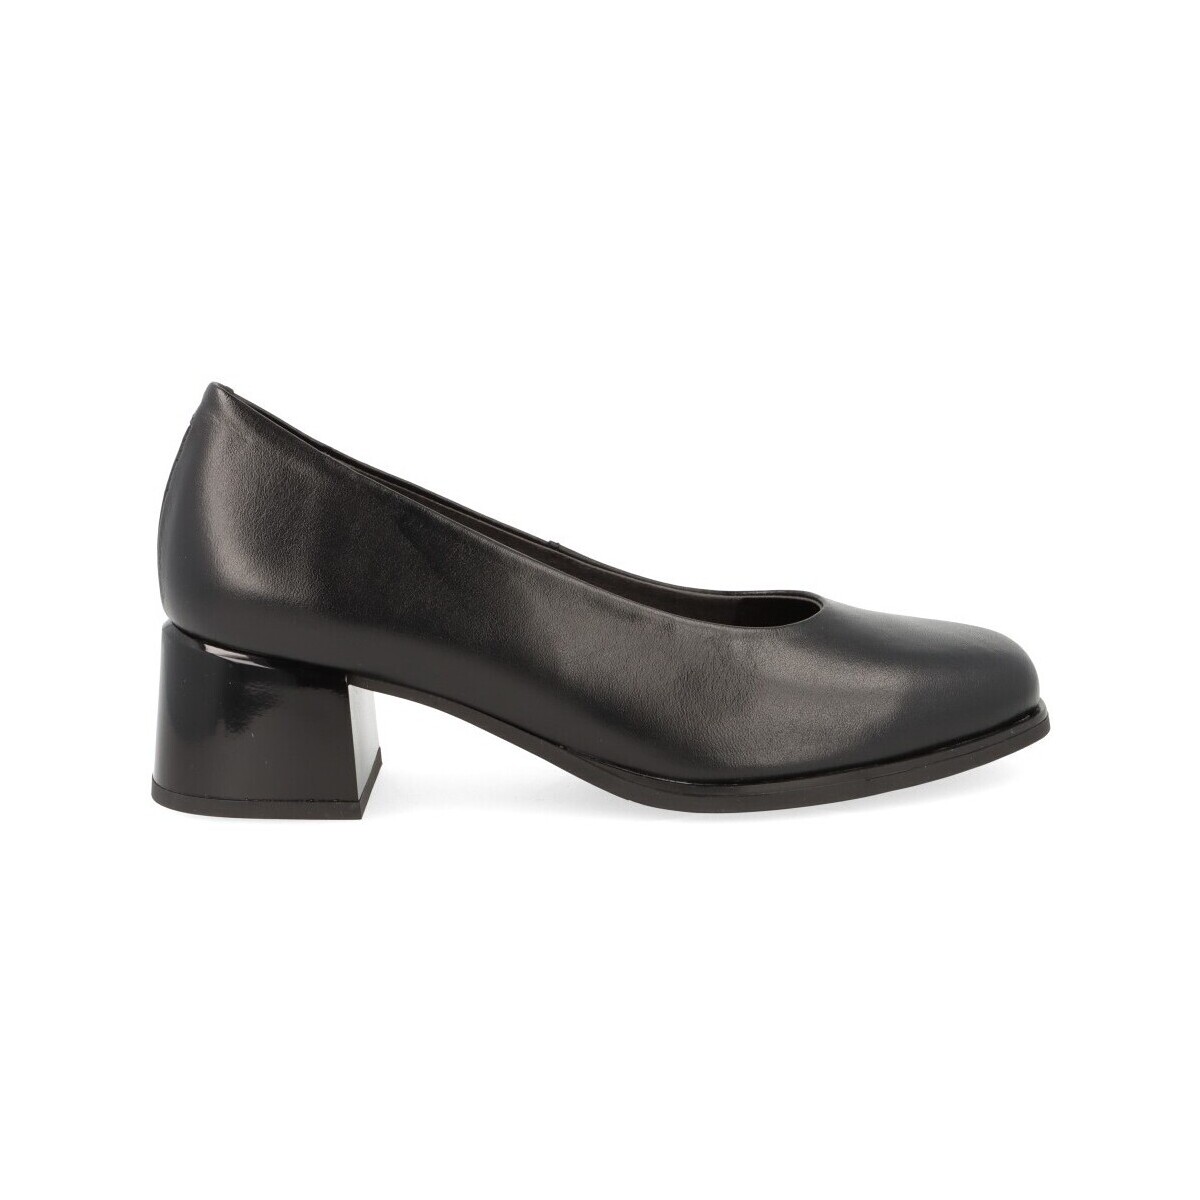 Chaussures Femme Escarpins Pitillos  Noir